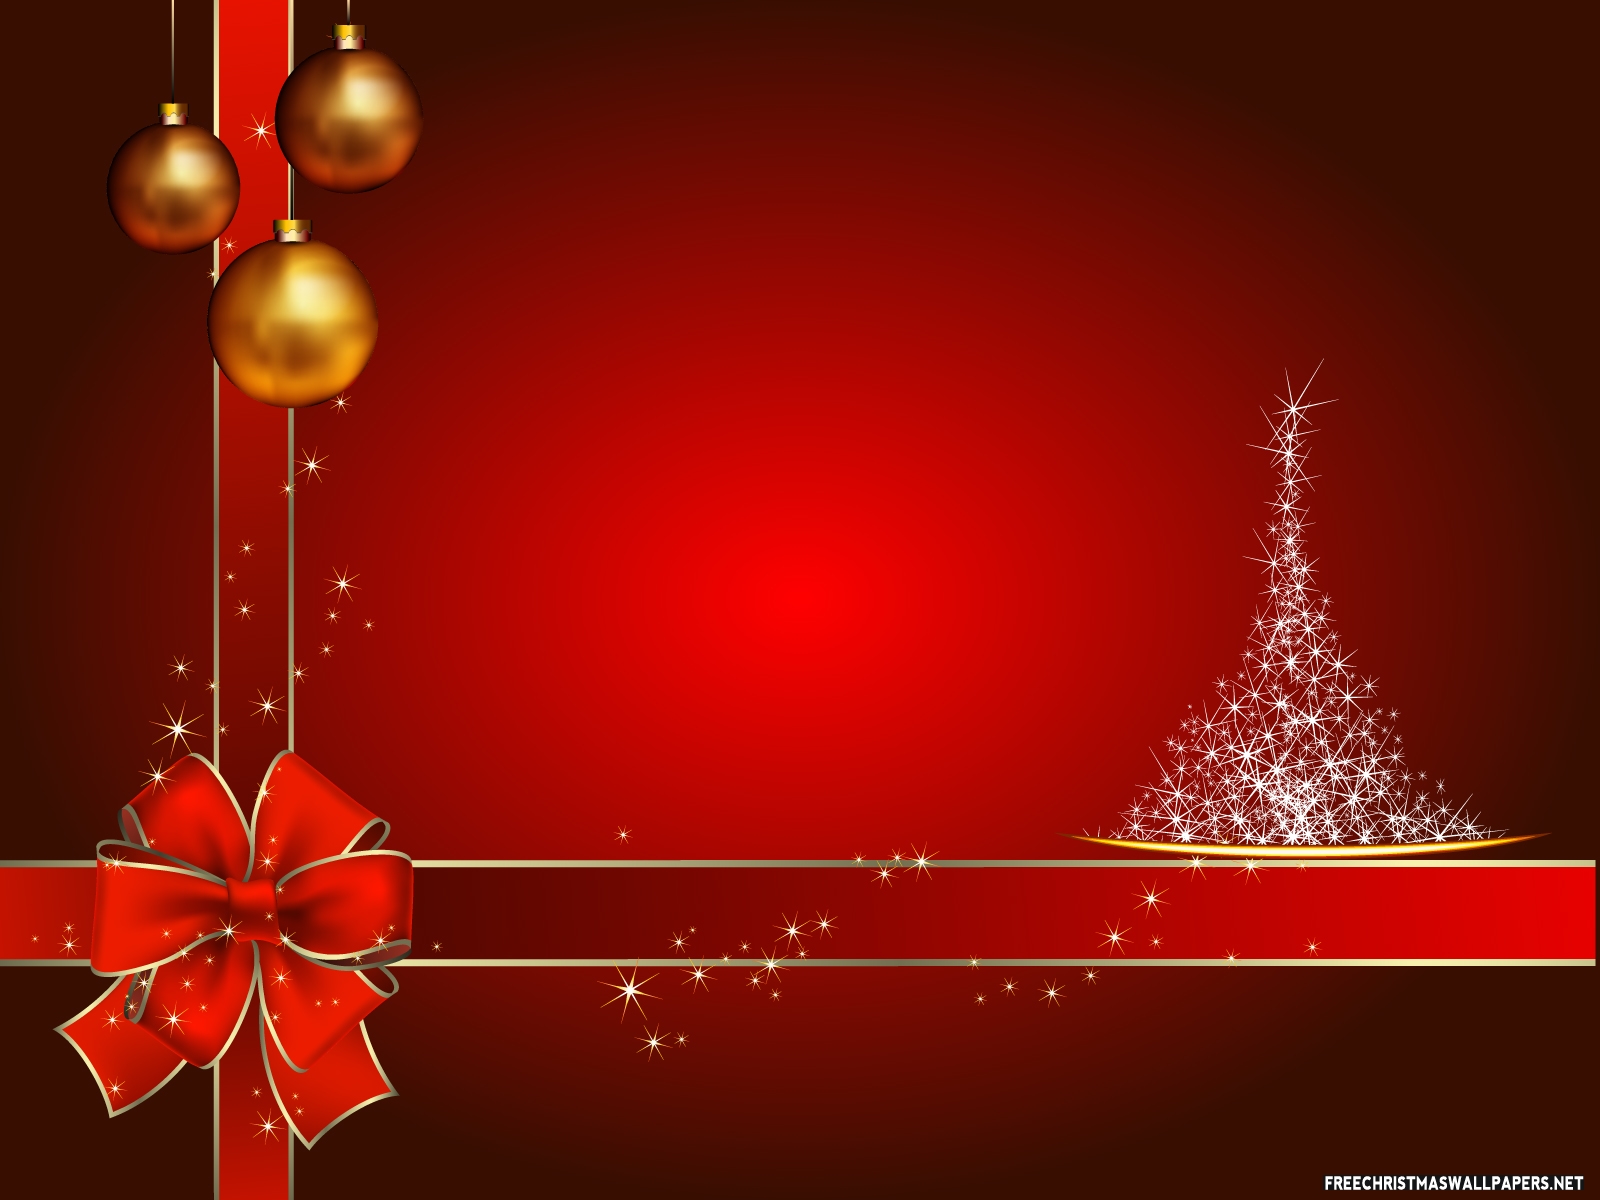 クリスマスギフトの壁紙,赤,クリスマスの飾り,クリスマスオーナメント,クリスマスツリー,クリスマス・イブ